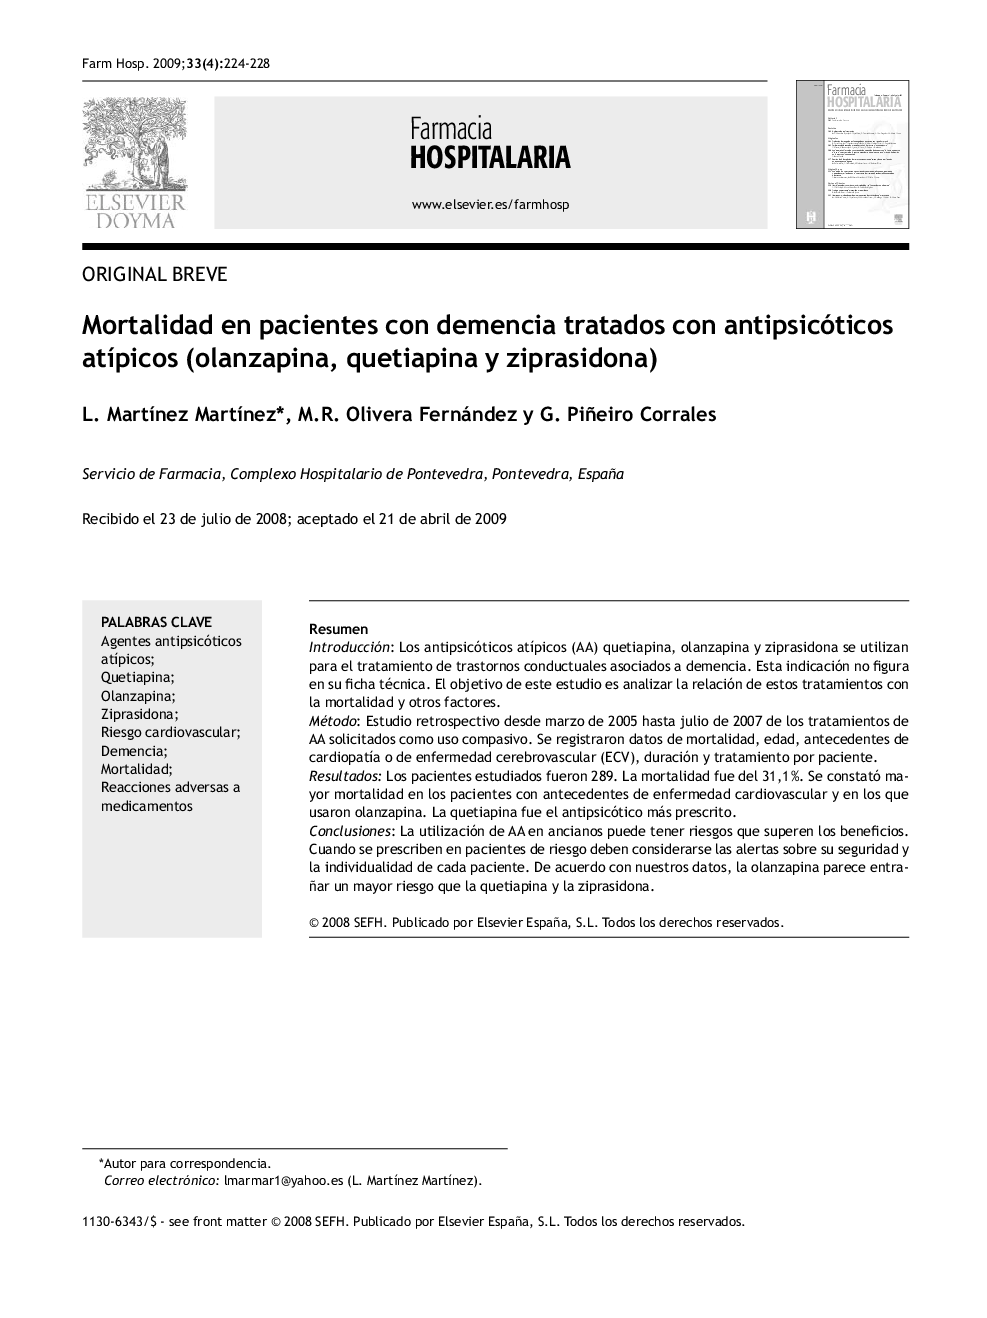 Mortalidad en pacientes con demencia tratados con antipsicóticos atÃ­picos (olanzapina, quetiapina y ziprasidona)